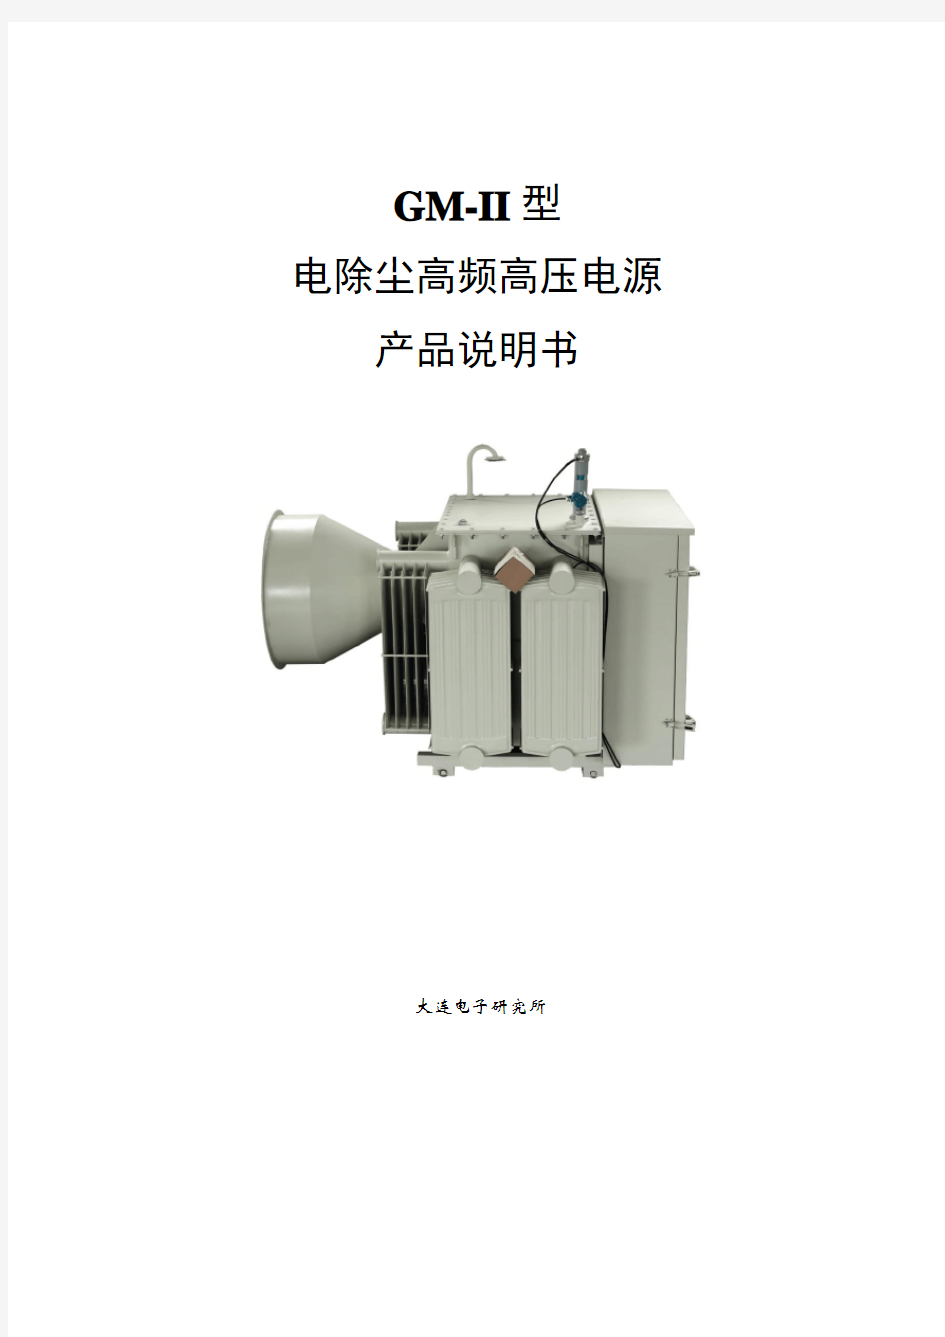 GM-II型电除尘高频电源说明书-2014.7.16_(2)